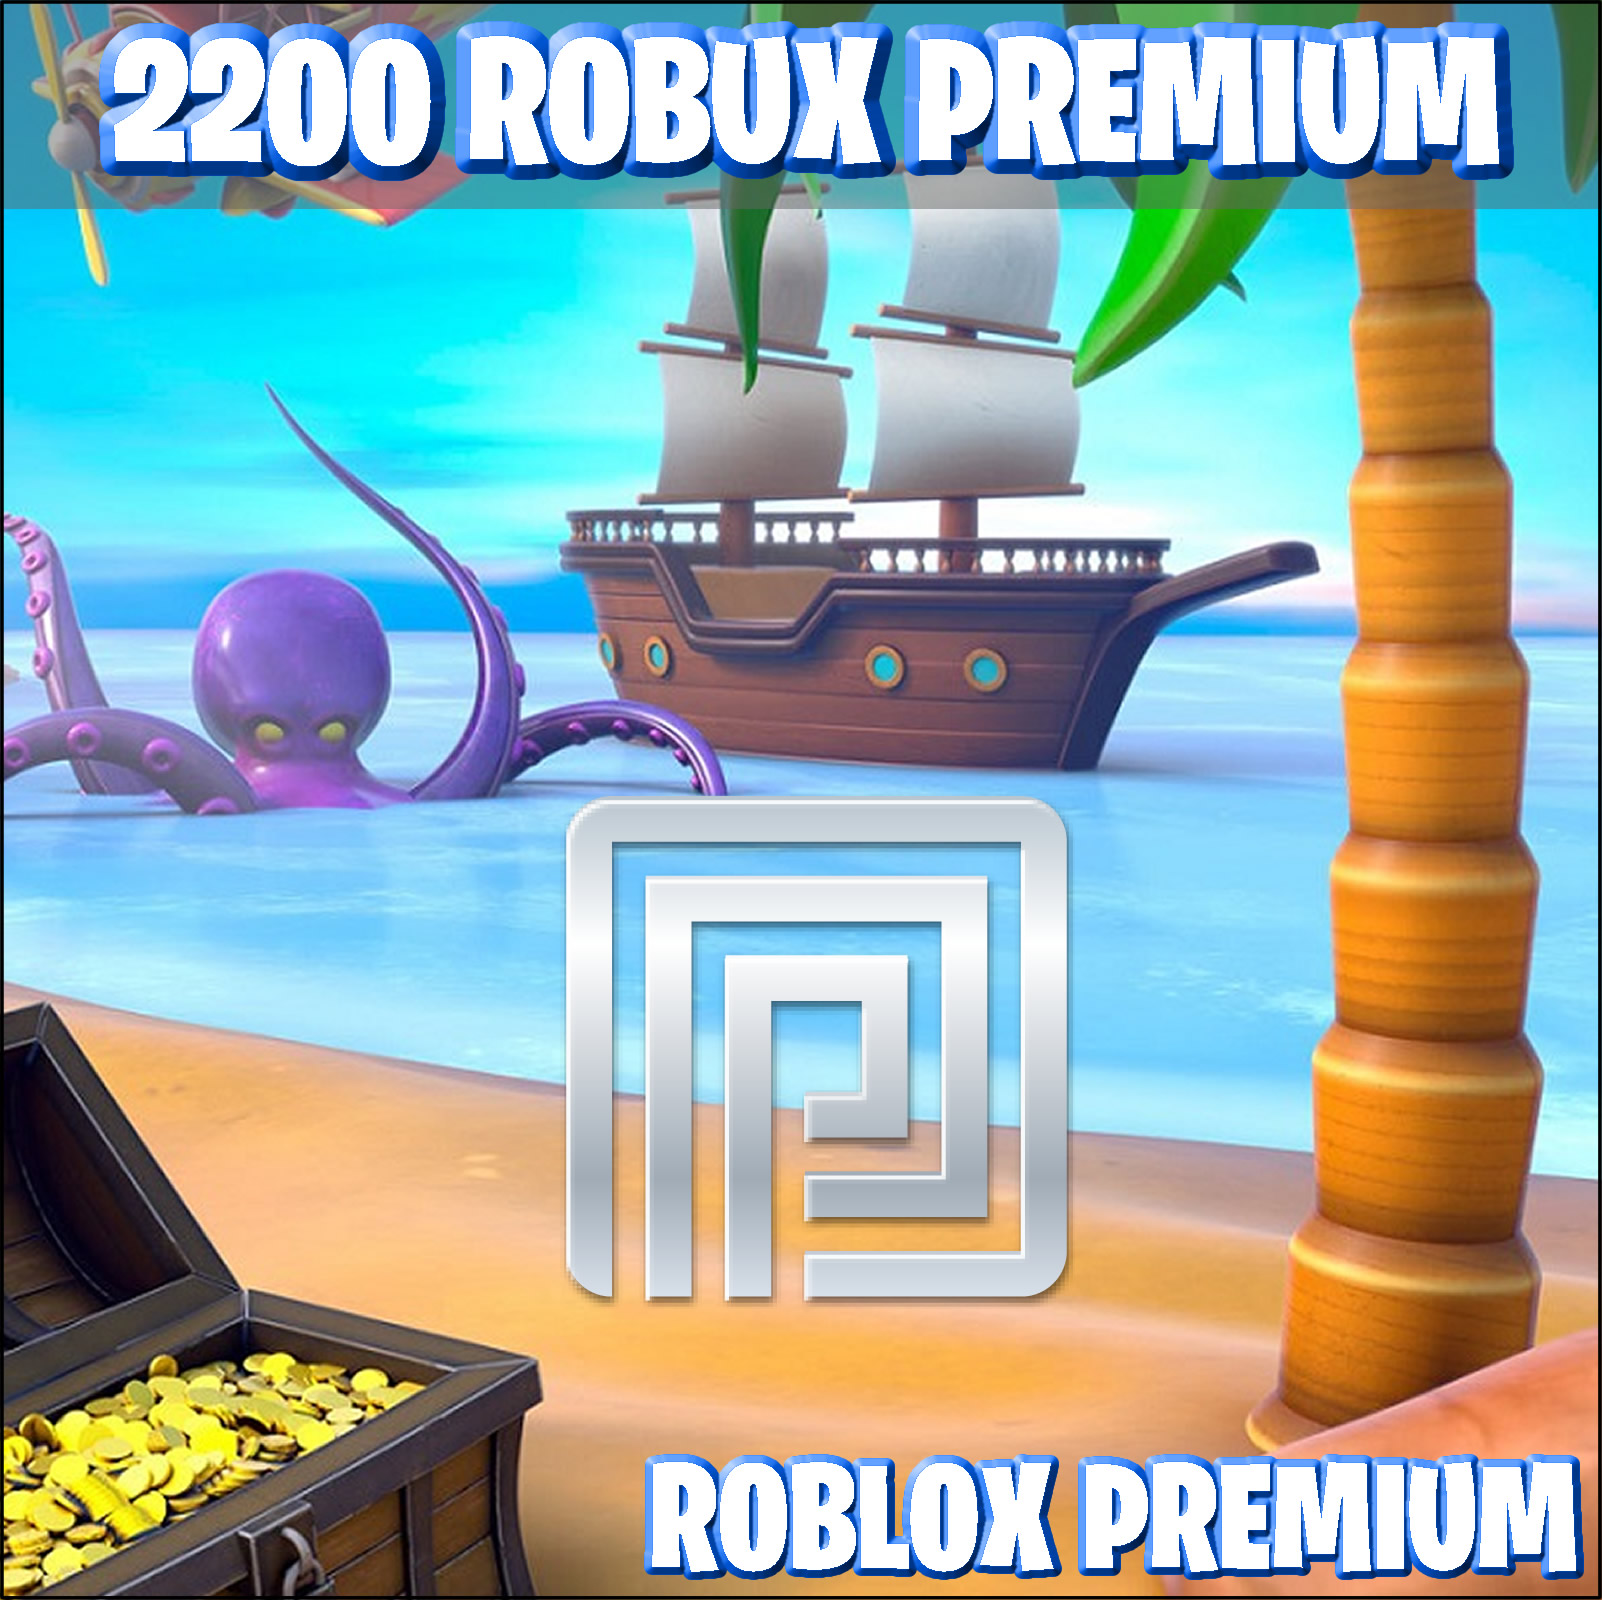 2200 robux premium